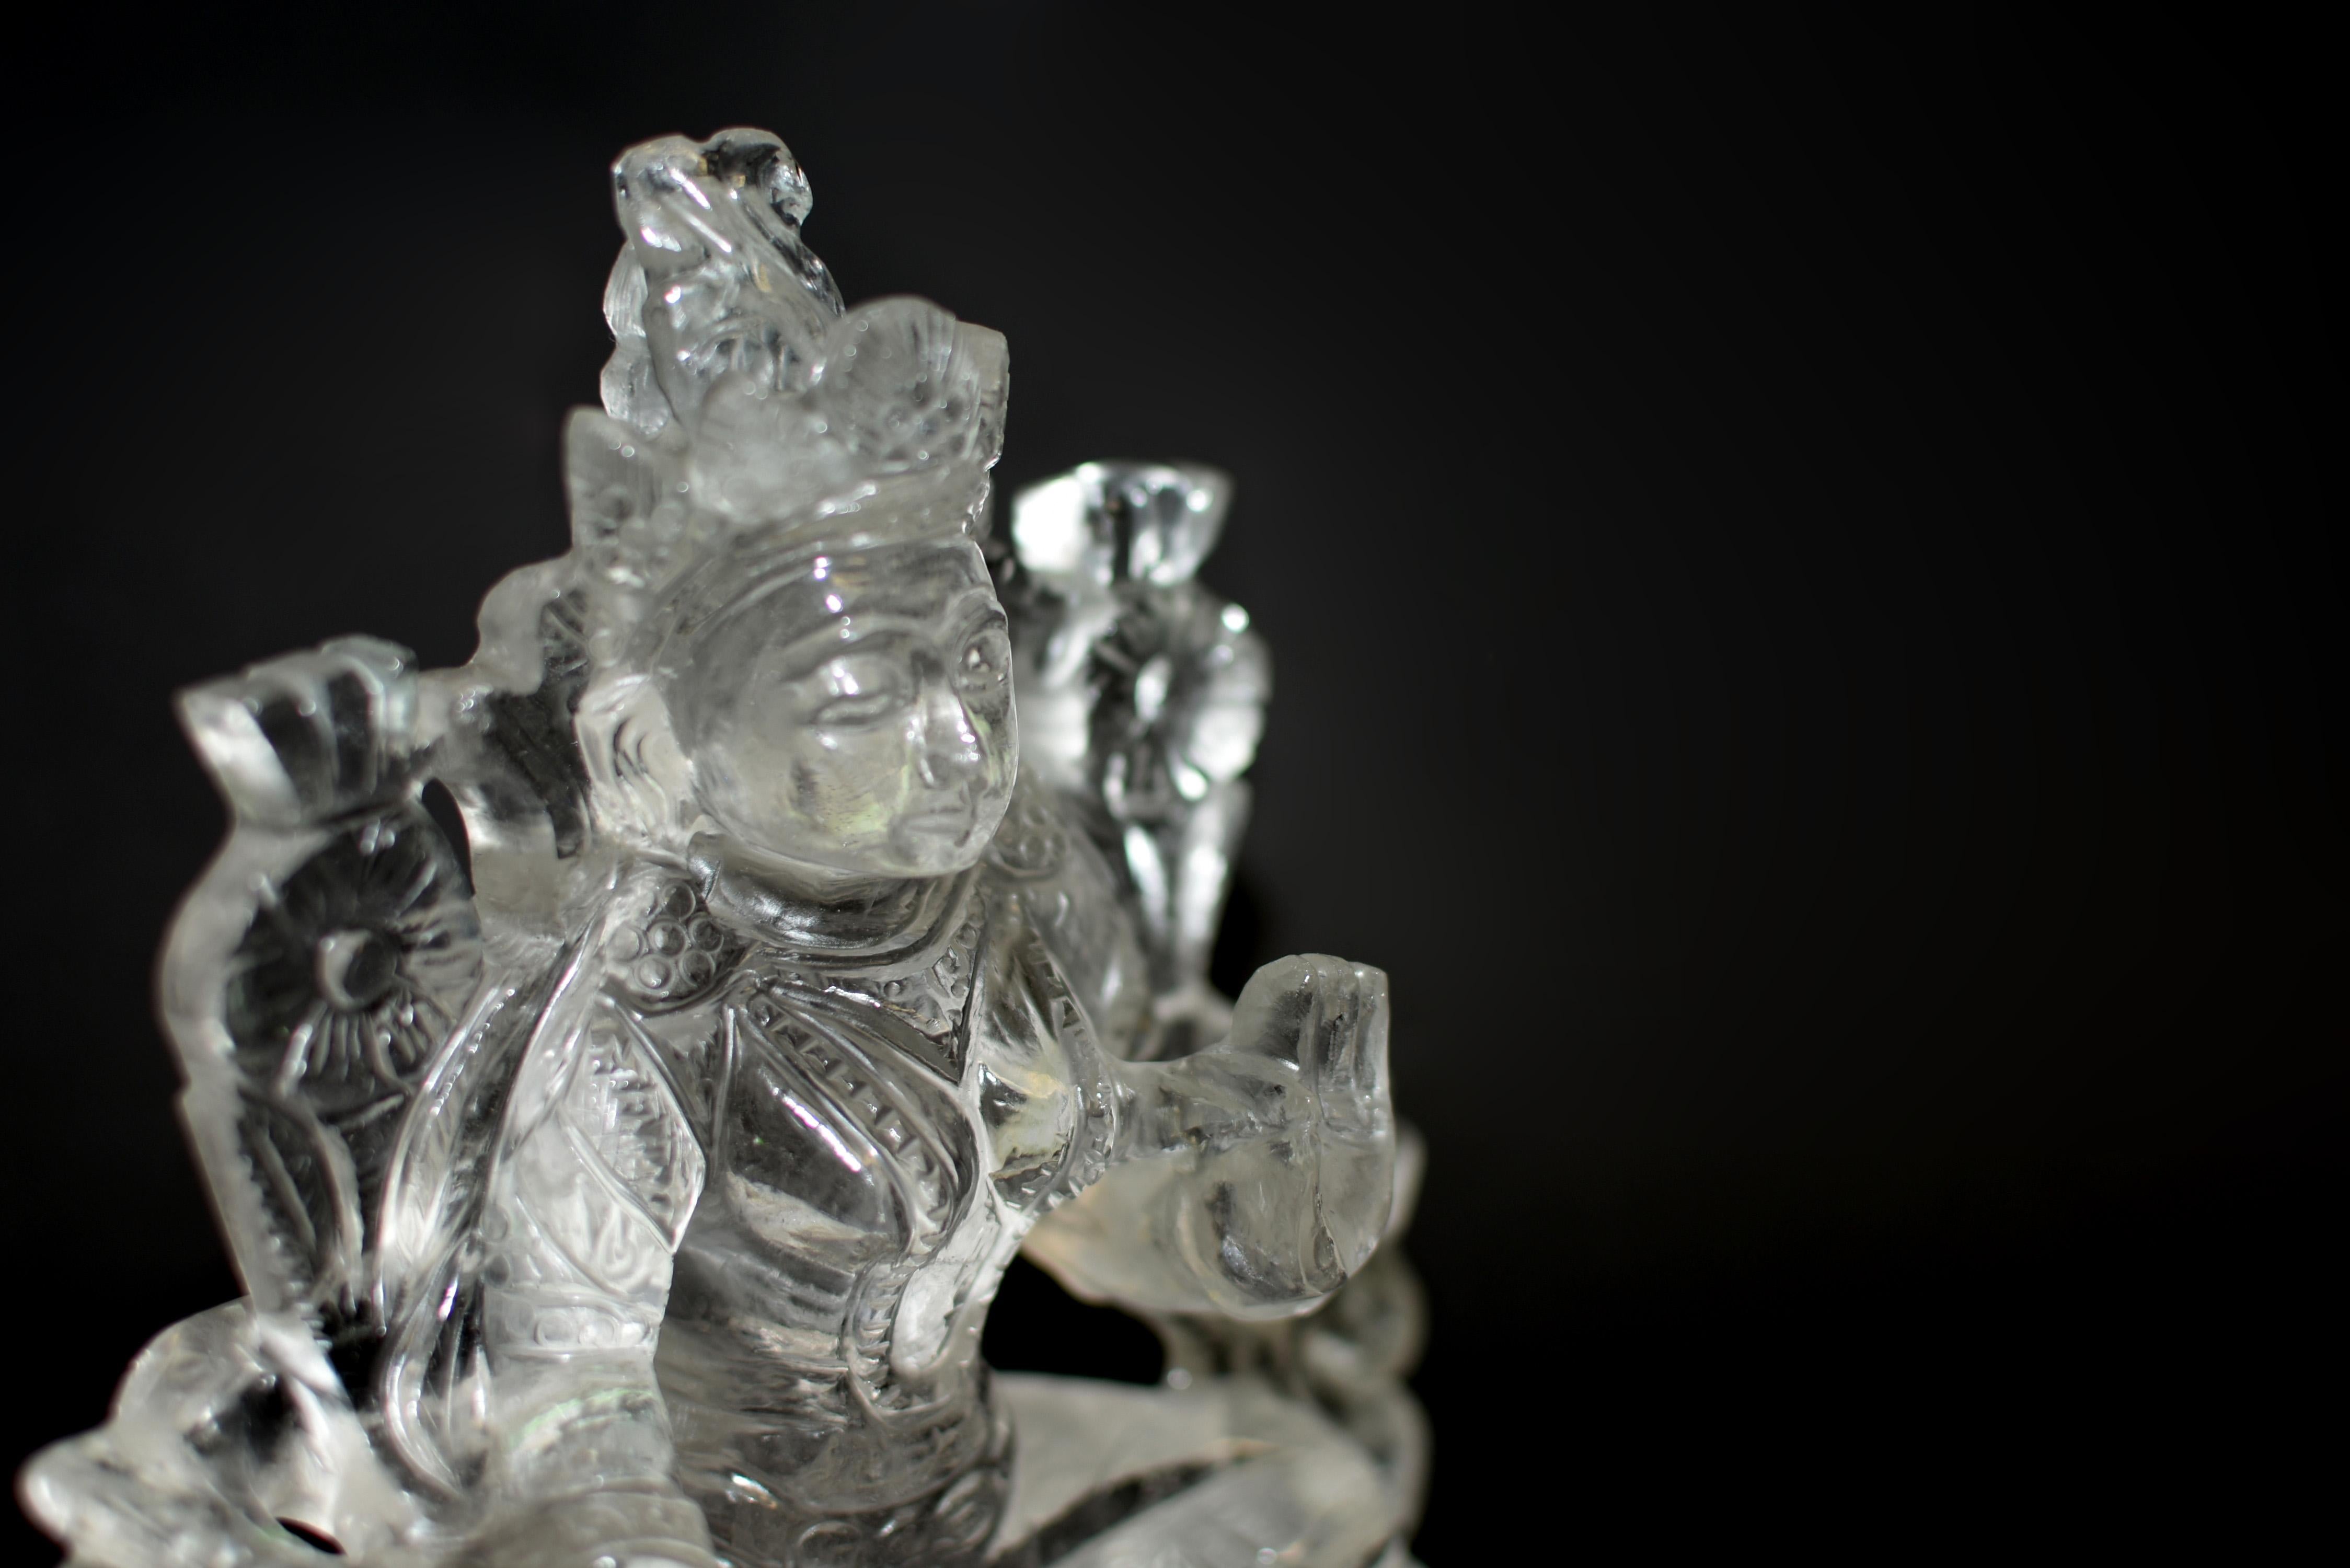 Die seltene Bergkristallstatue der tibetischen Grünen Tara besticht durch ihre exquisite Handwerkskunst und spirituelle Präsenz. In Lalitasana auf einem Lotusthron sitzend, mit ihrem hängenden Fuß auf einem kleineren Lotos ruhend, streckt sich die